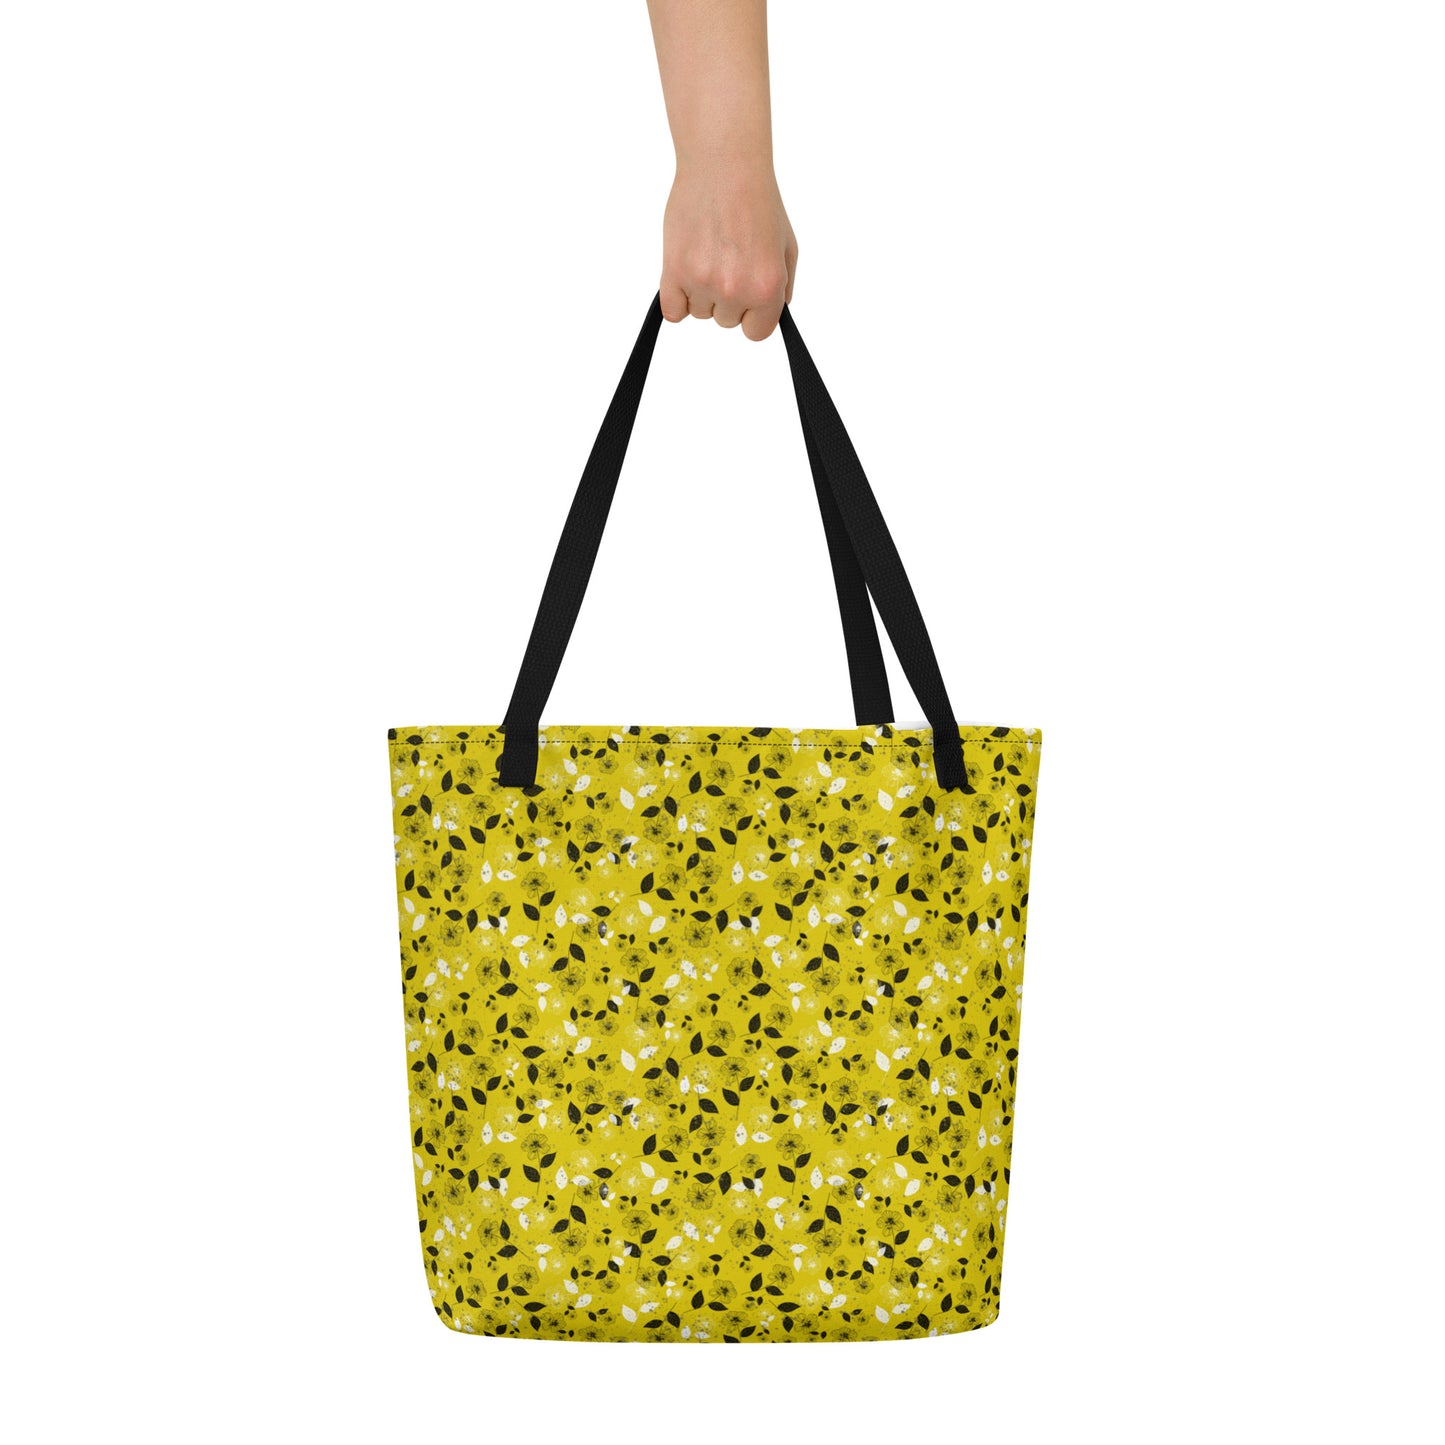 Chartreuse- Large Tote Bag w/ inside pocket